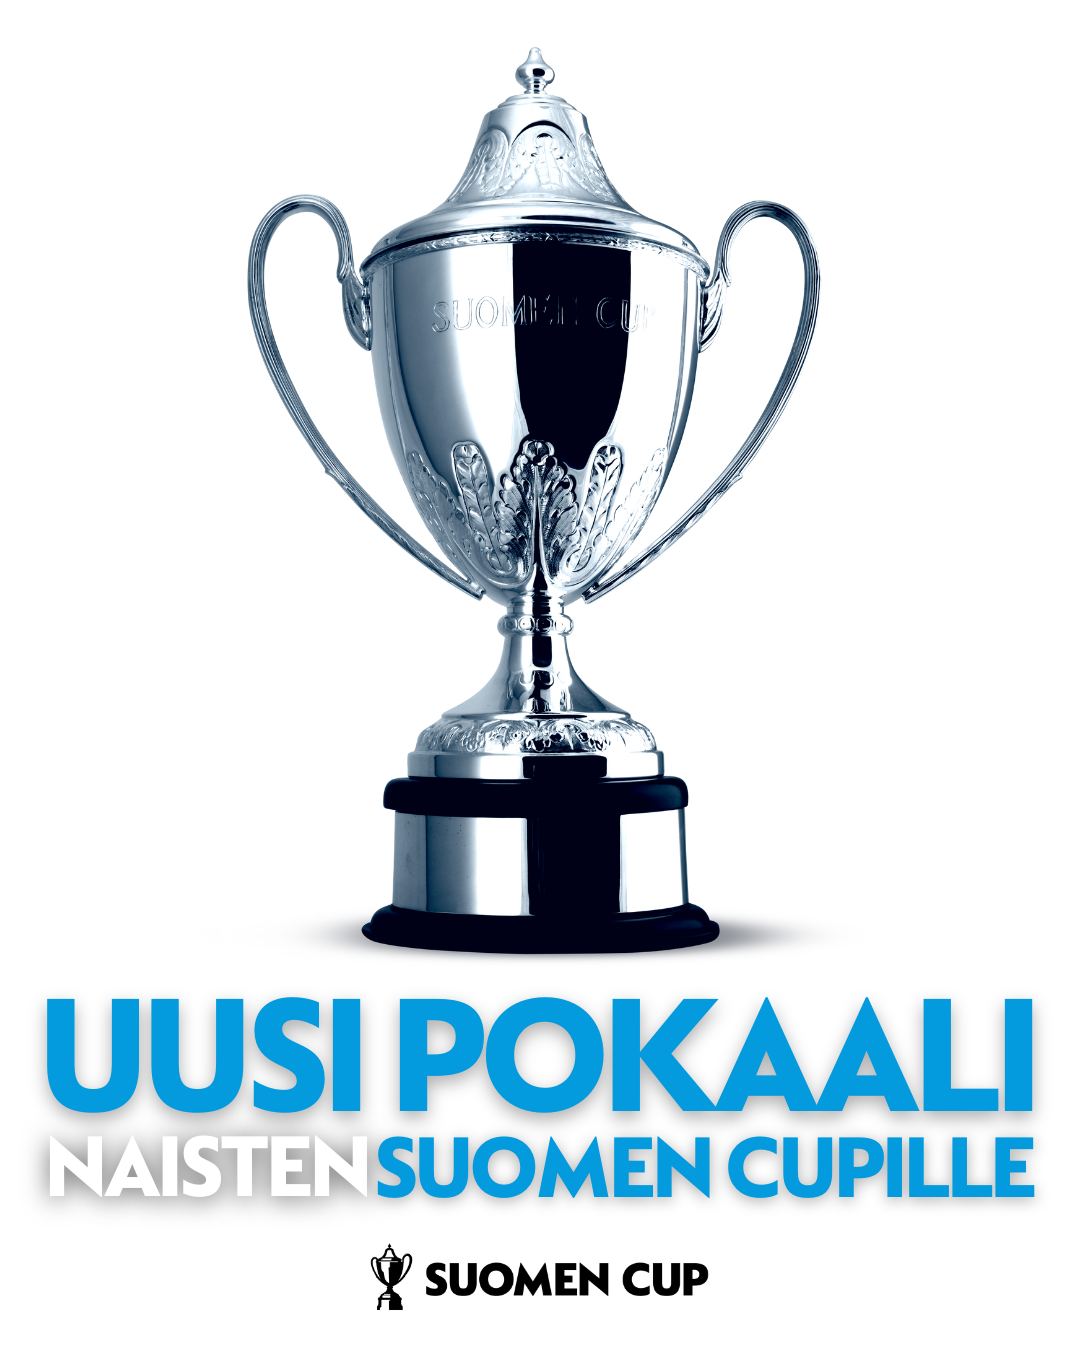 Naisten Suomen Cupin pokaali